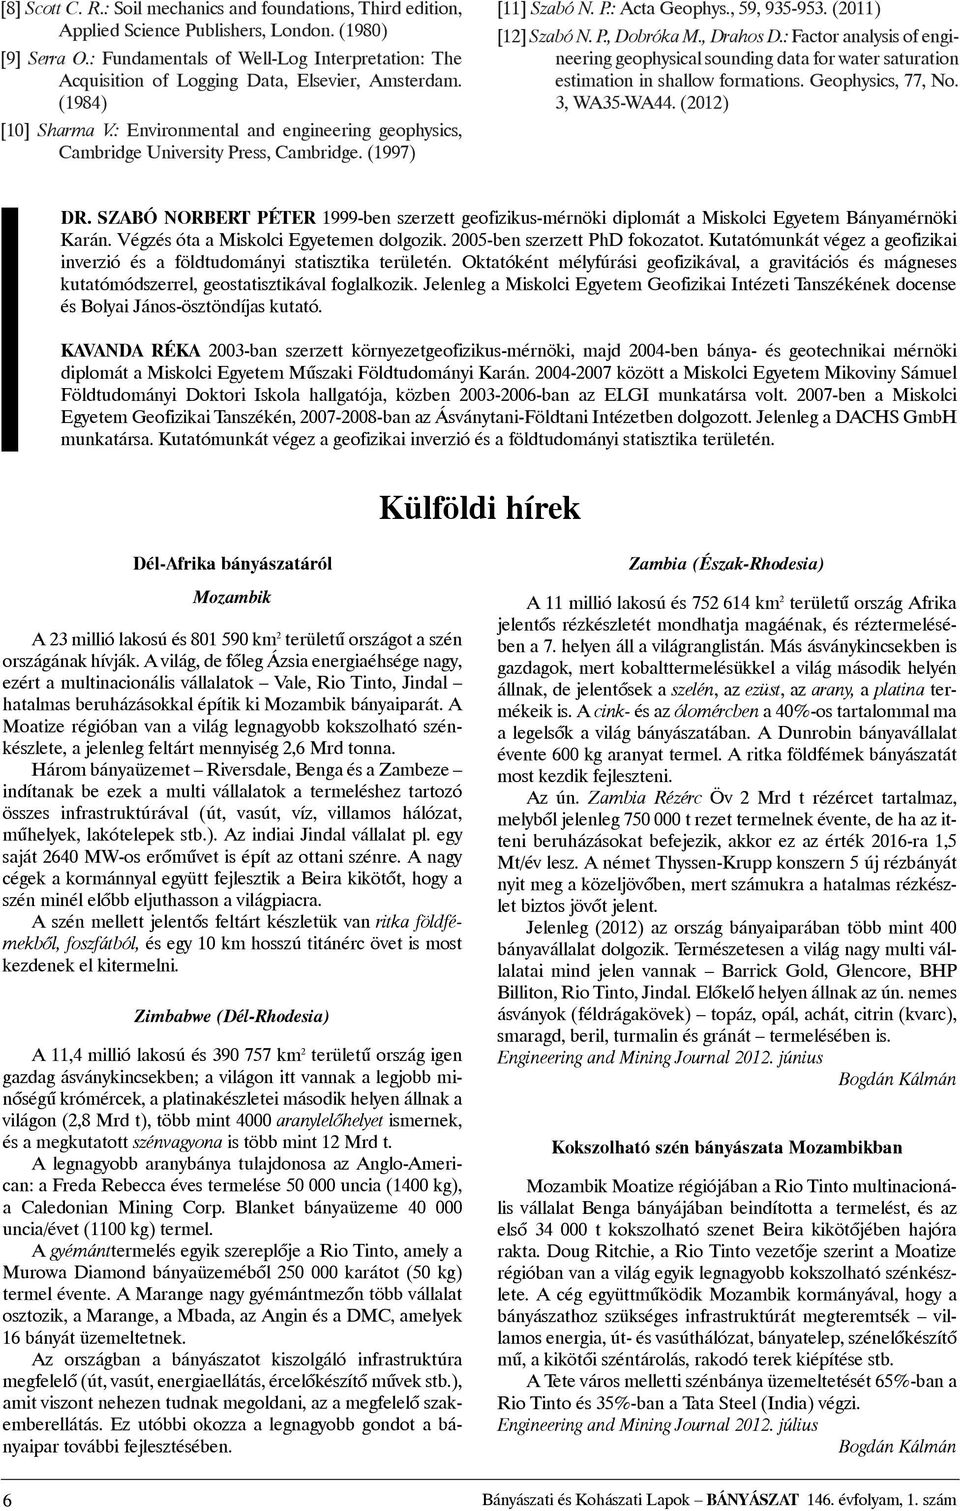 (1997) [11] Szabó N. P.: Acta Geophys., 59, 935-953. (2011) [12] Szabó N. P., Dobróka M., Drahos D.